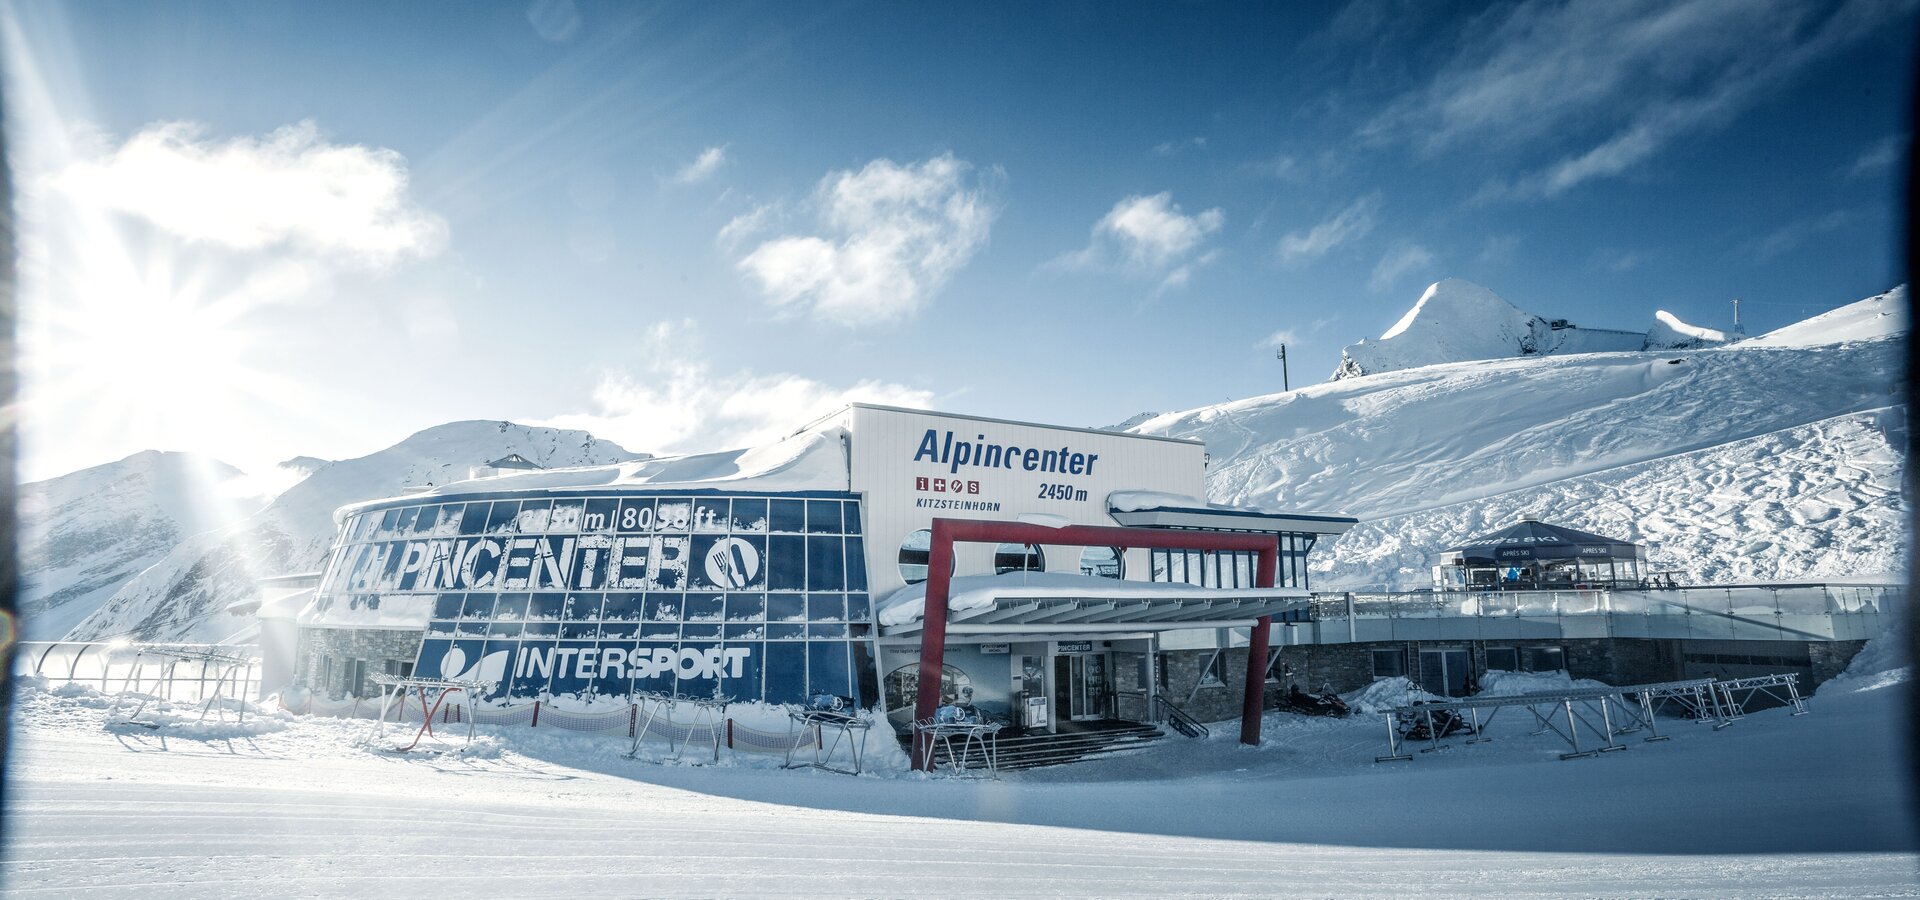 Alpincenter with InfoService, SB Marktrestaurant, Sportshop, Skyline Bar, Schirmbar Parasol | © Kitzsteinhorn